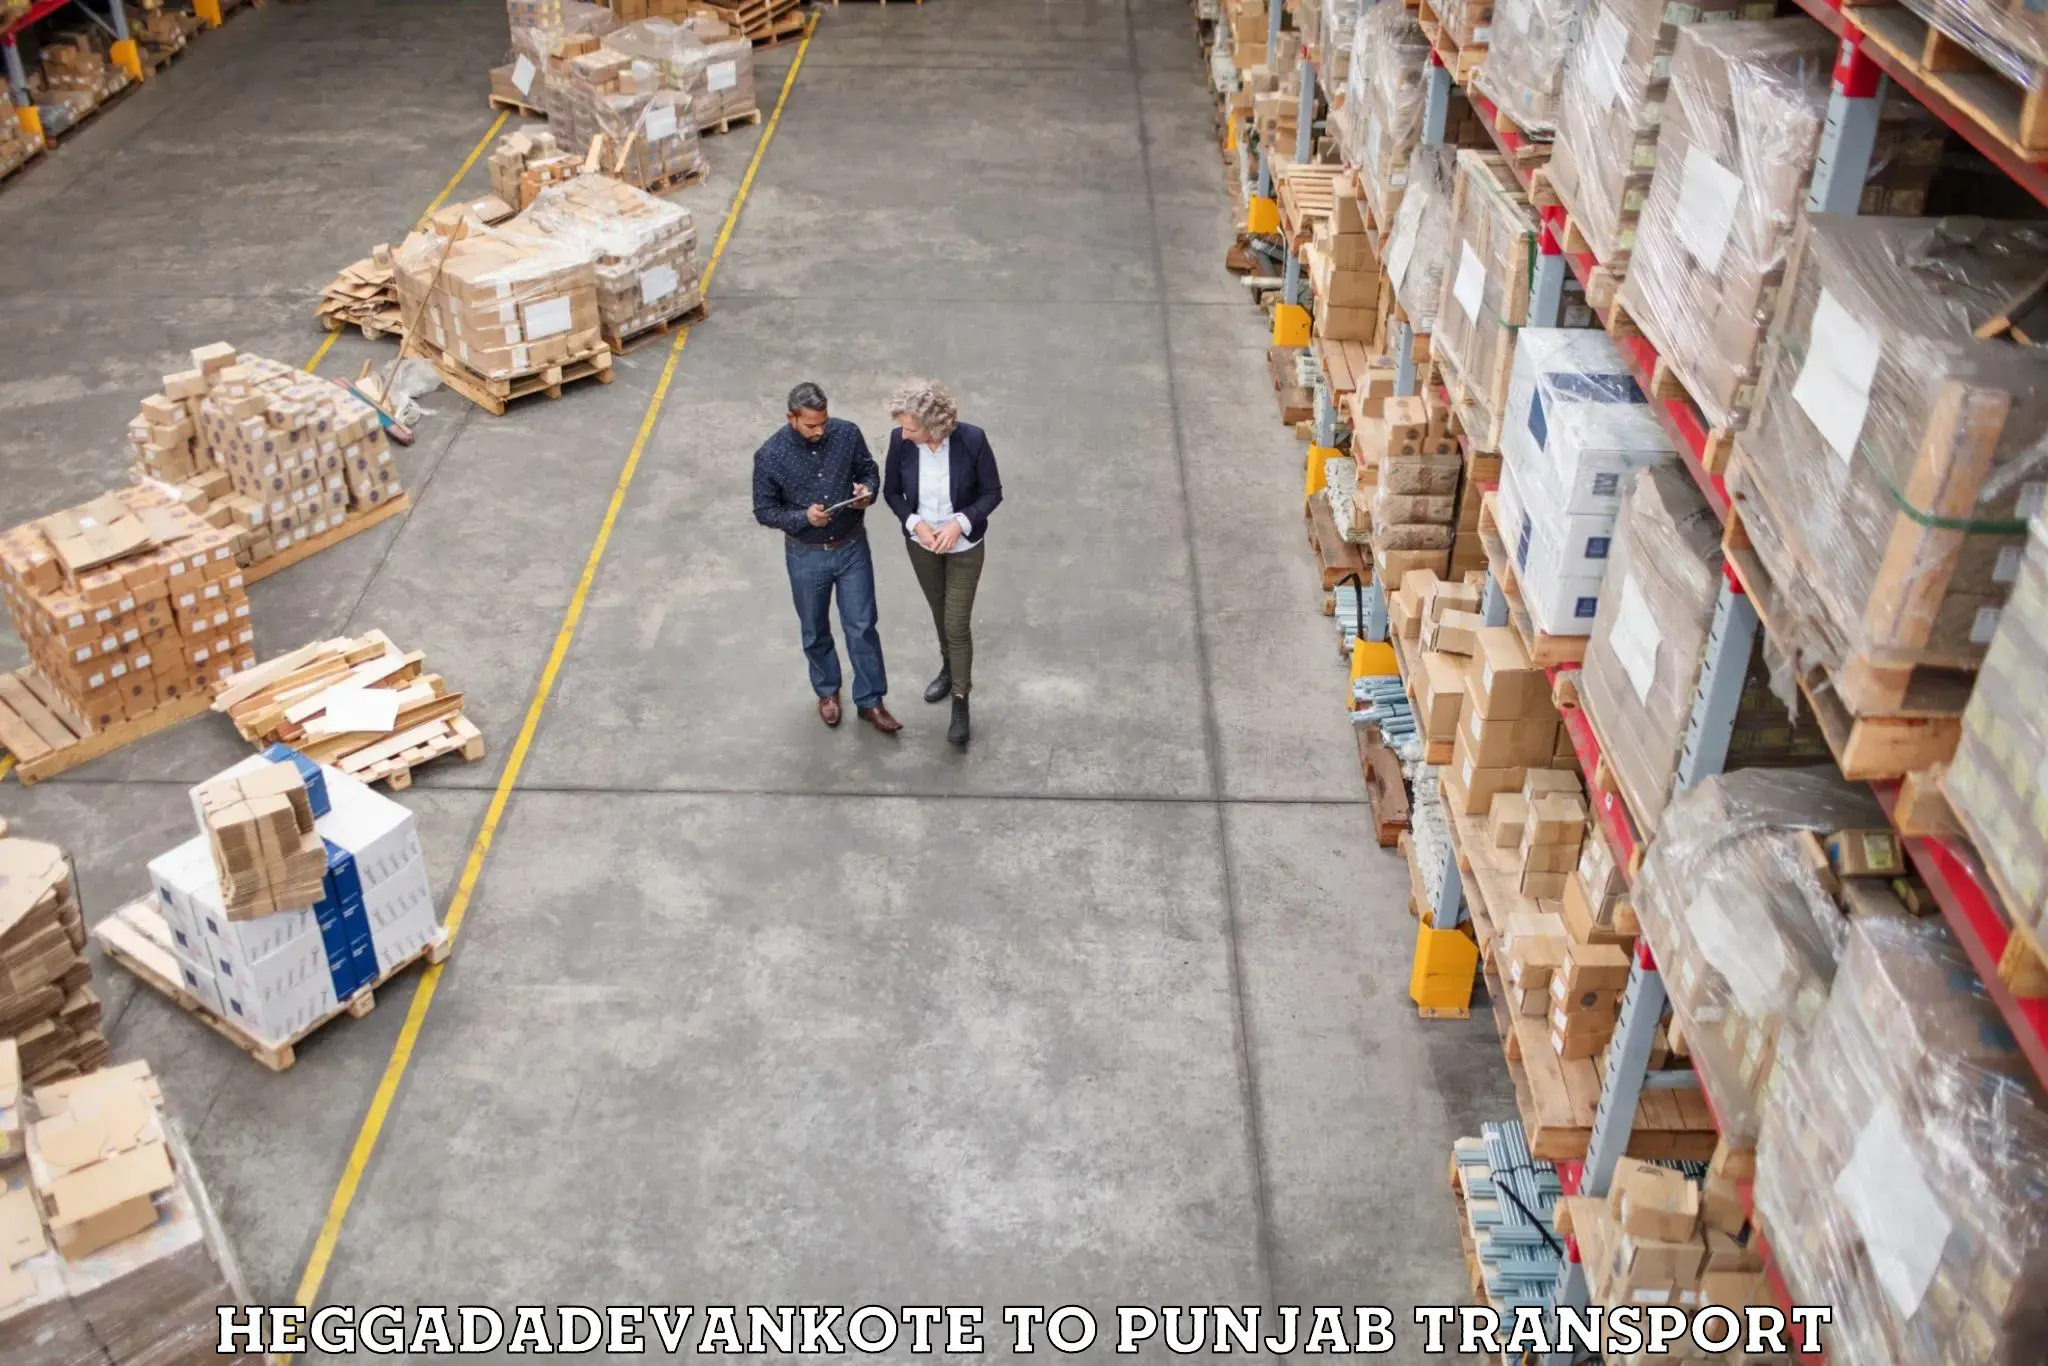 Shipping partner Heggadadevankote to Punjab